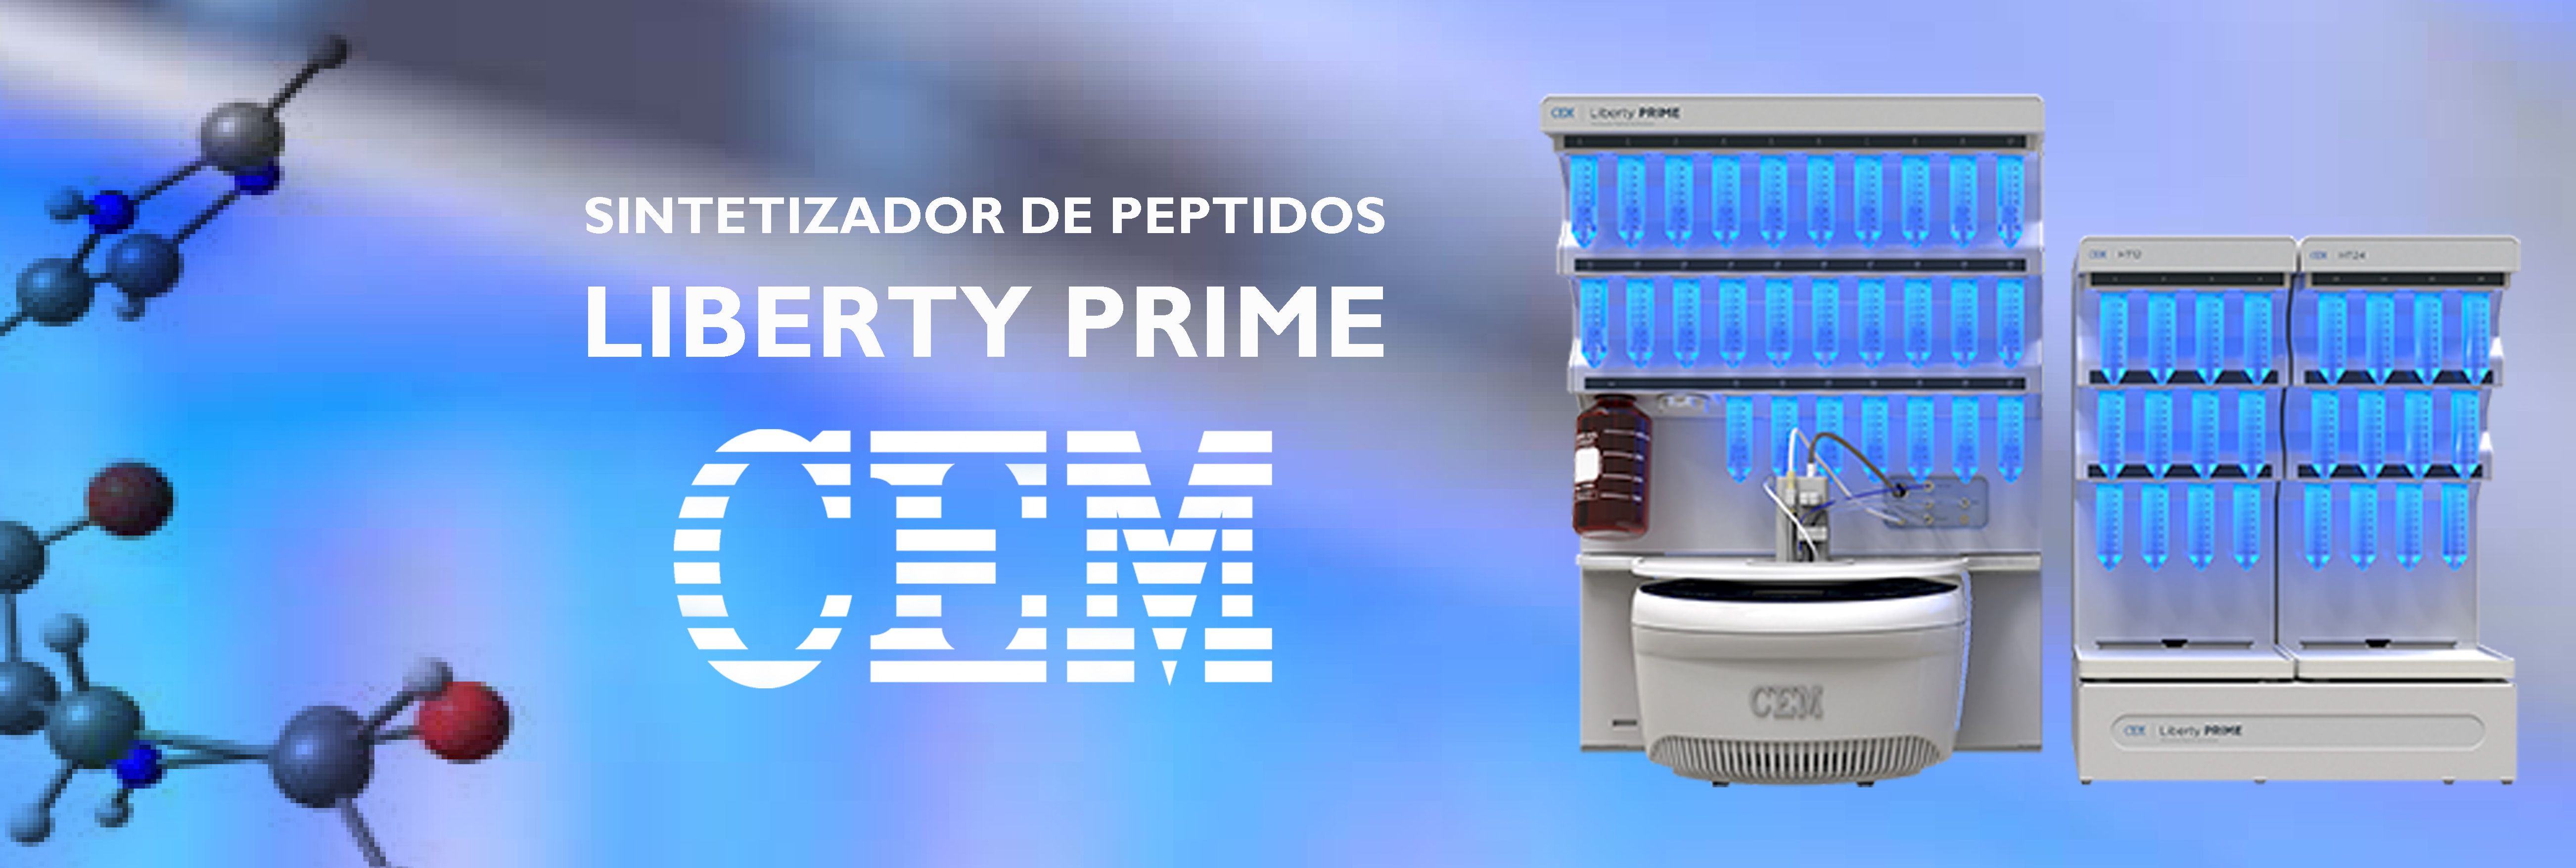 Presentamos el sintetizador de péptidos CEM Liberty Prime